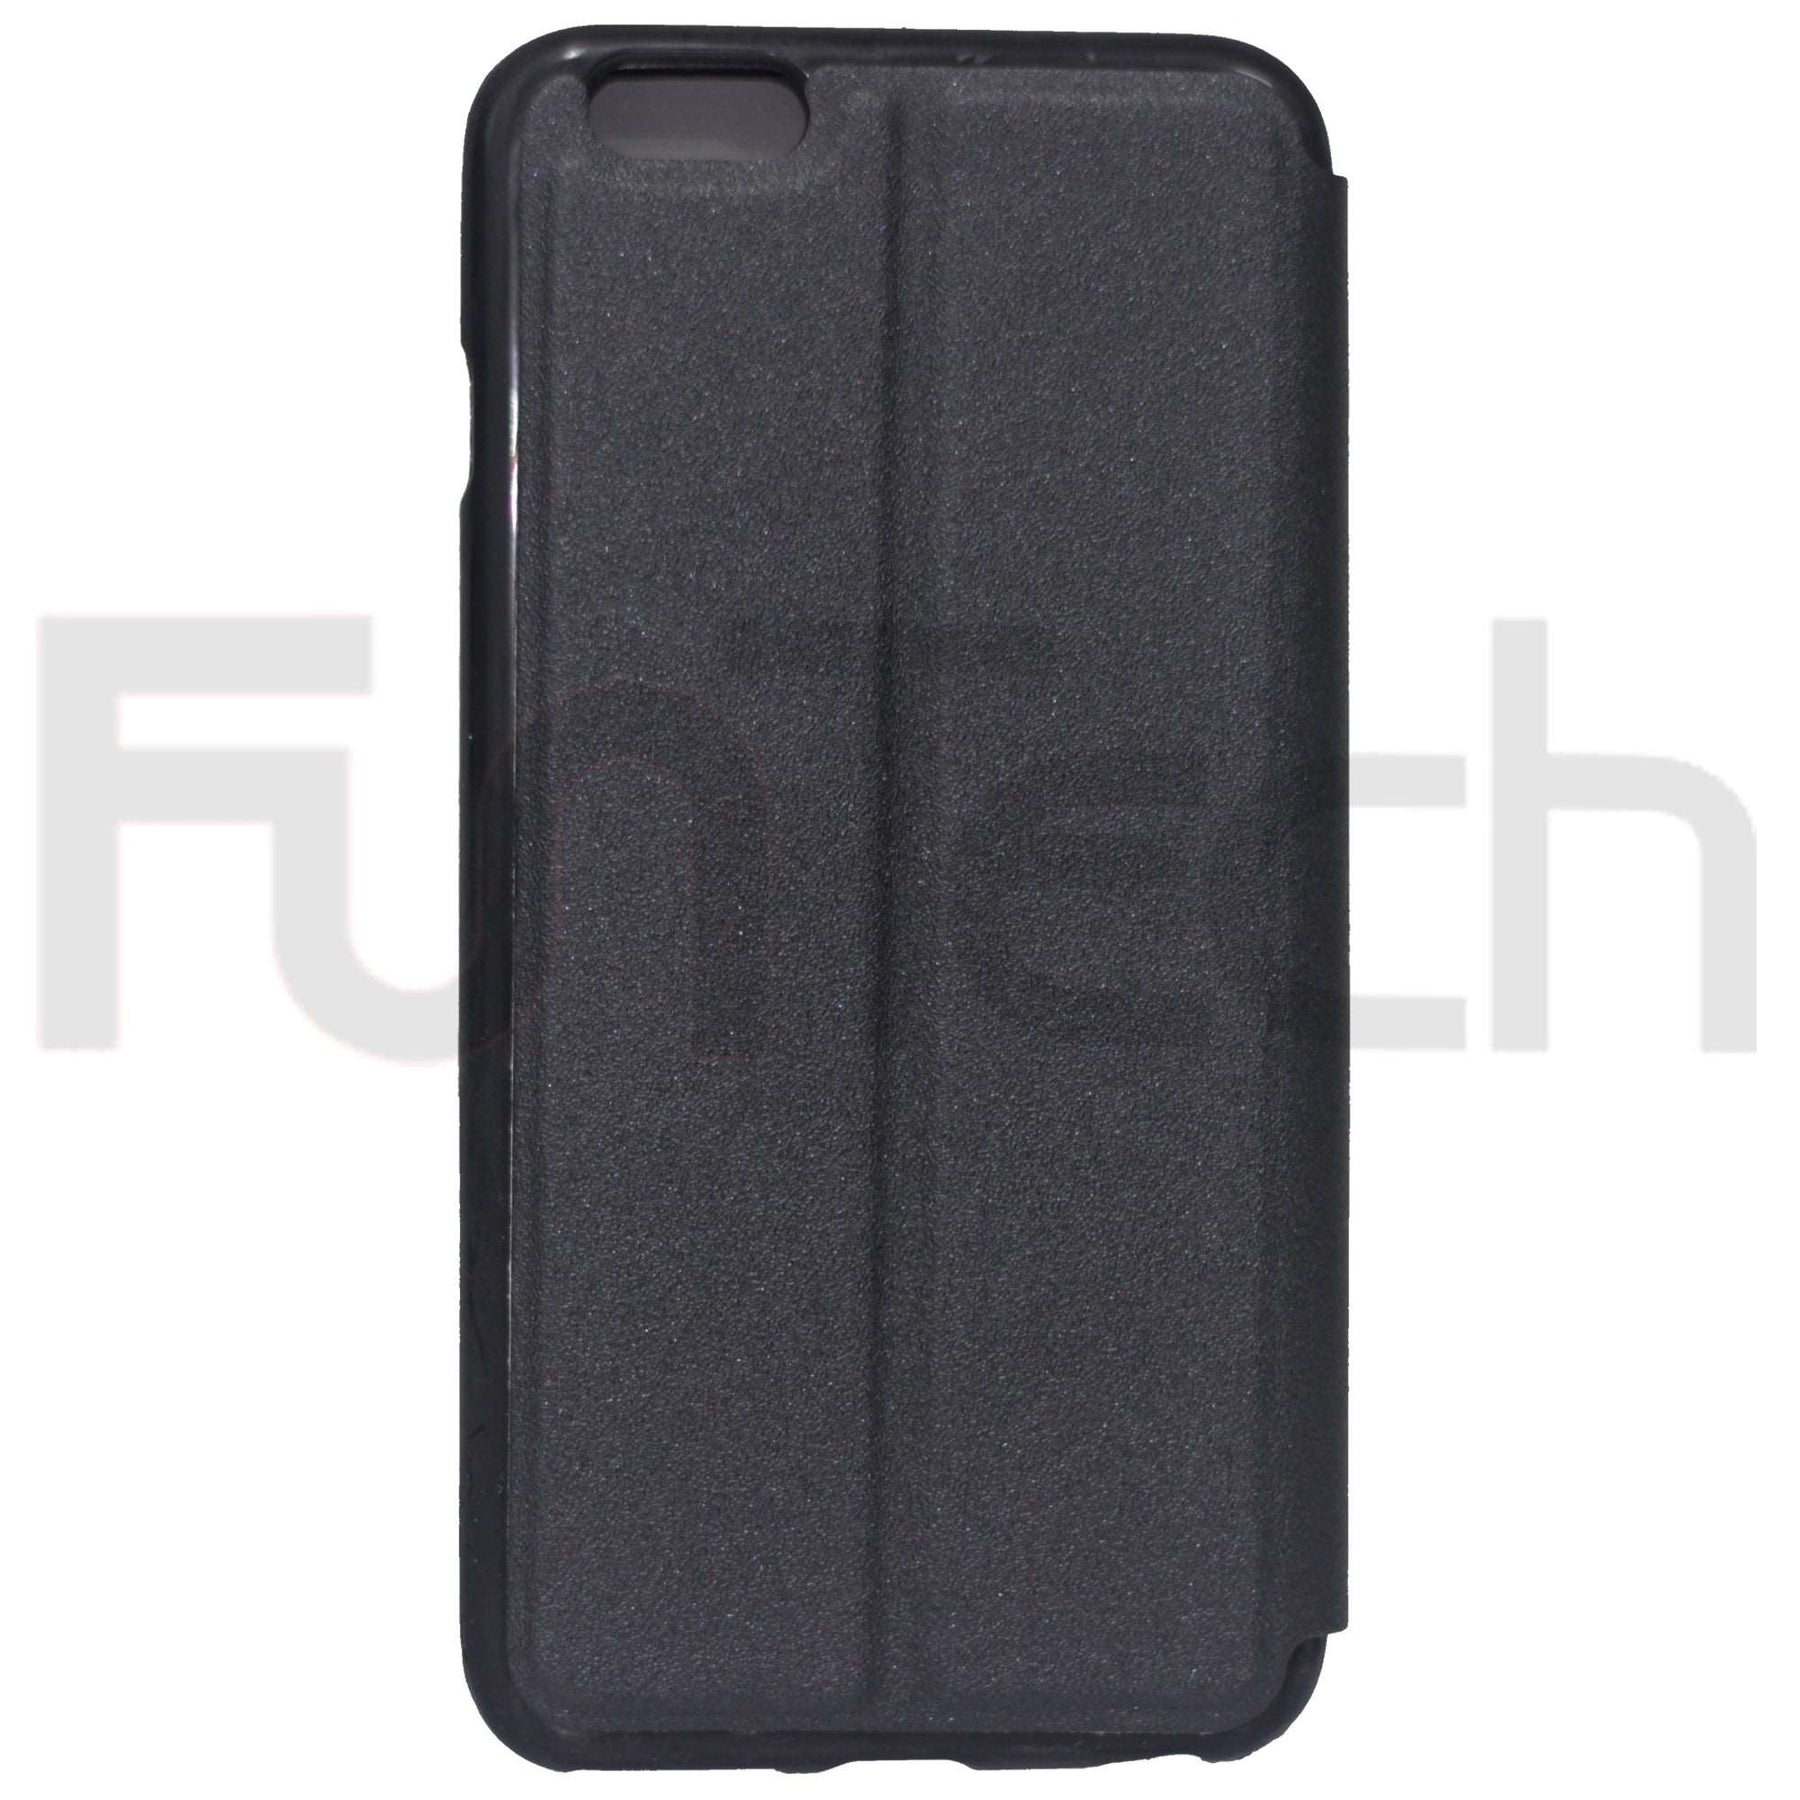 Apple iPhone 6 Plus / 6s Plus, Leather Wallet Case, Color Black.